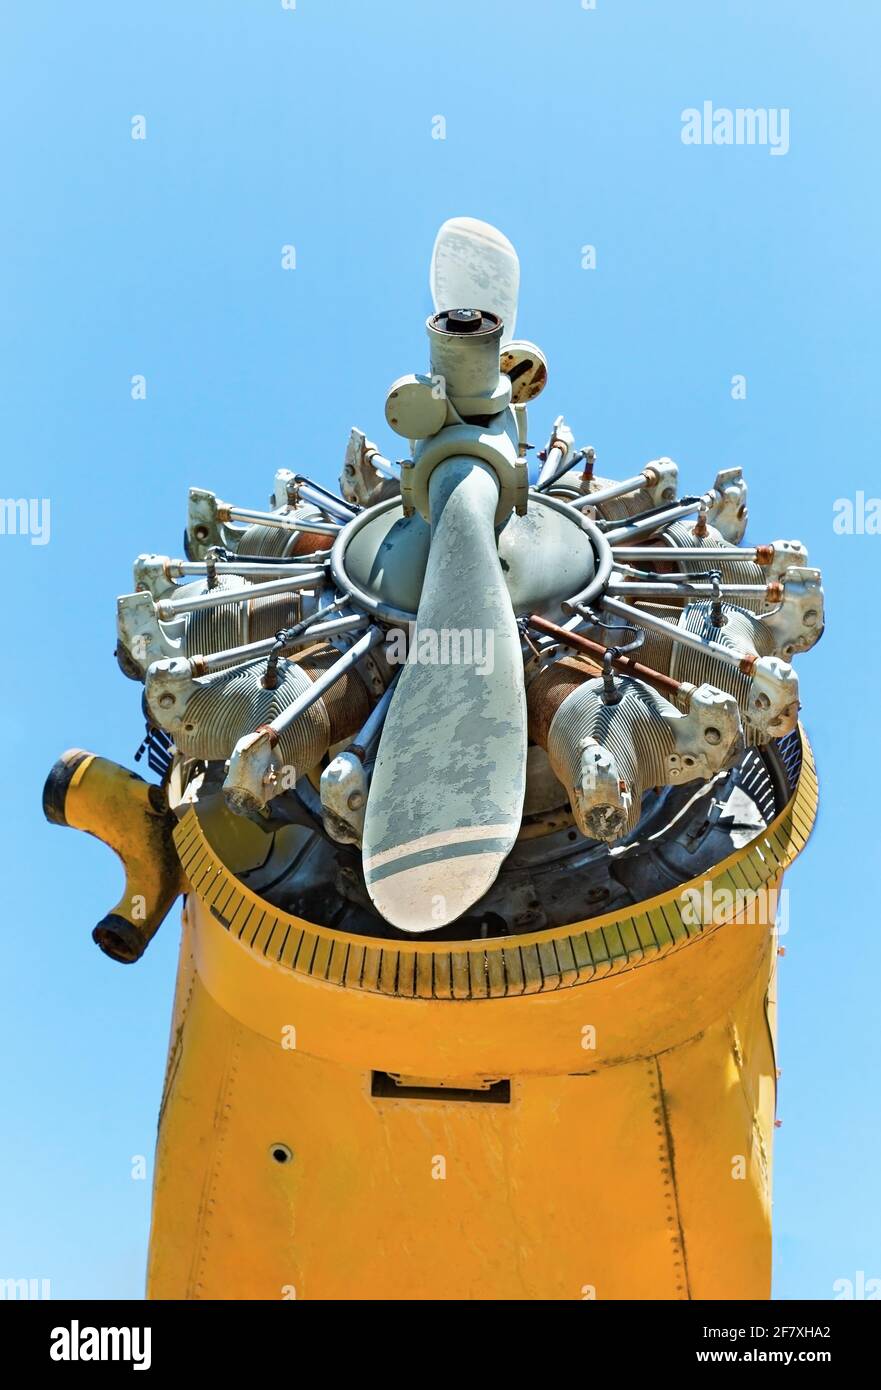 motore e elica di un vecchio aereo contro il blu cielo Foto Stock